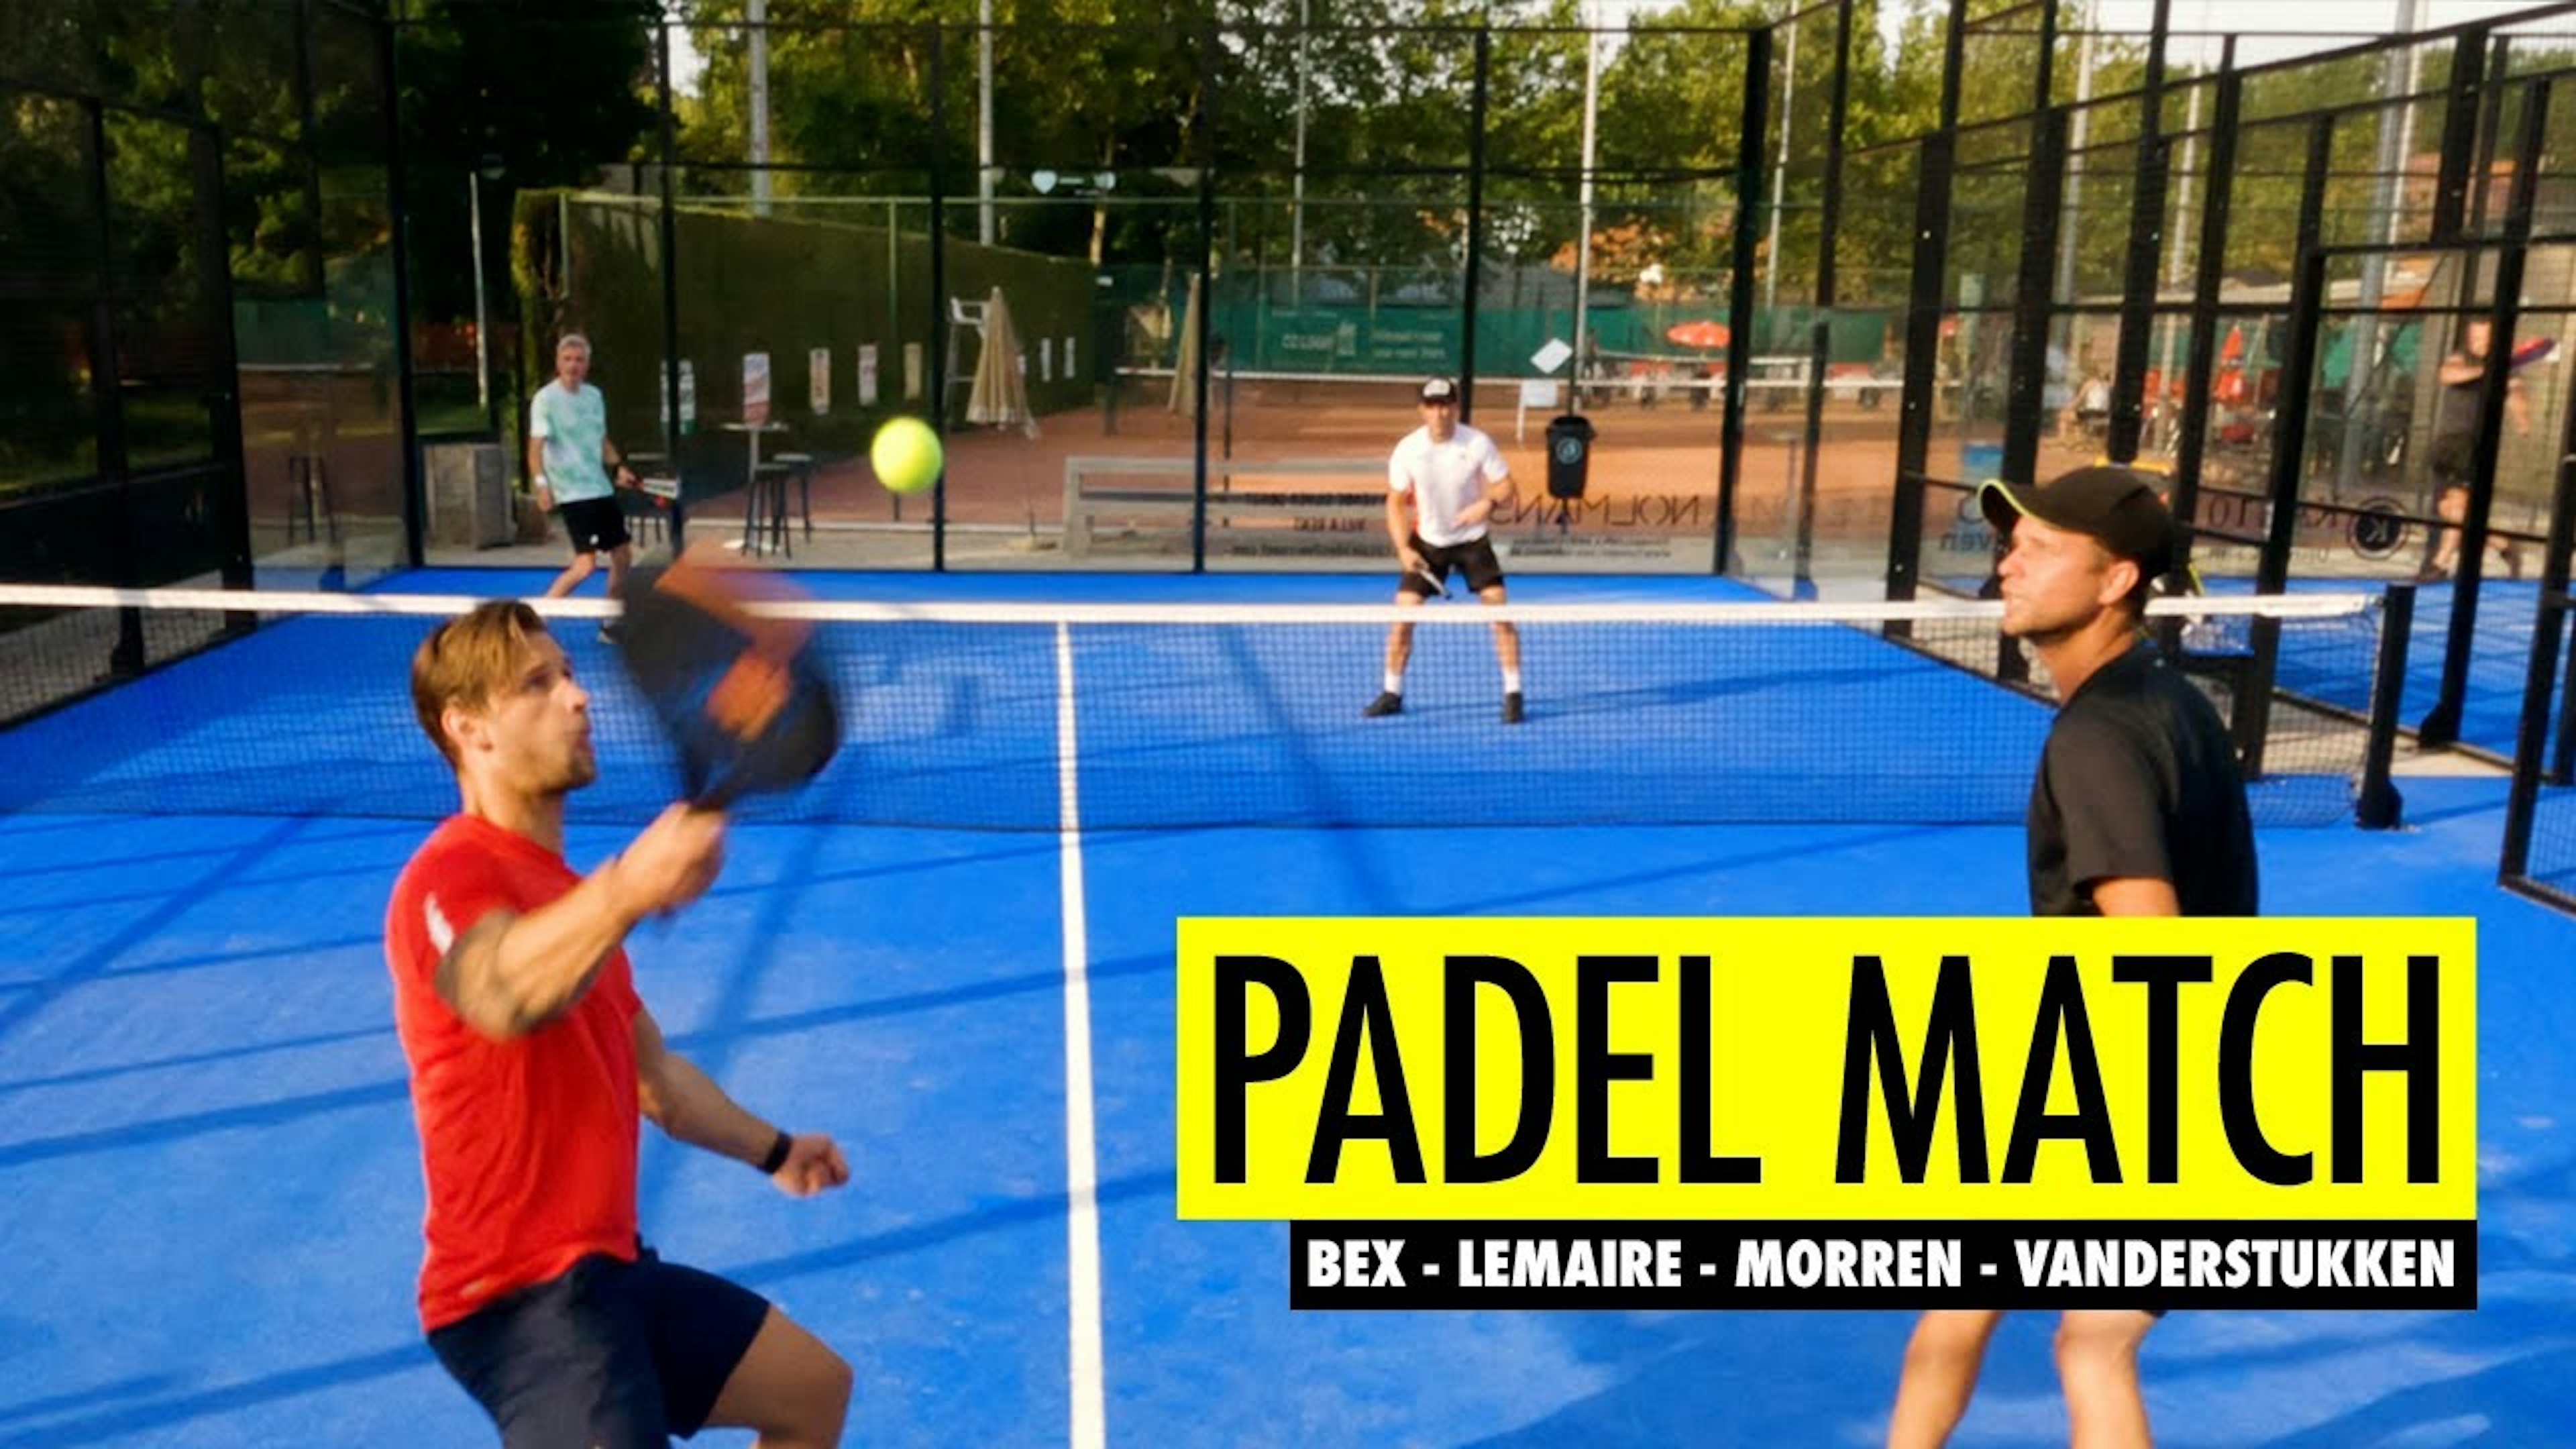 Padel Match: Bex - Lemaire - Morren - Vanderstukken | Andy Lemaire